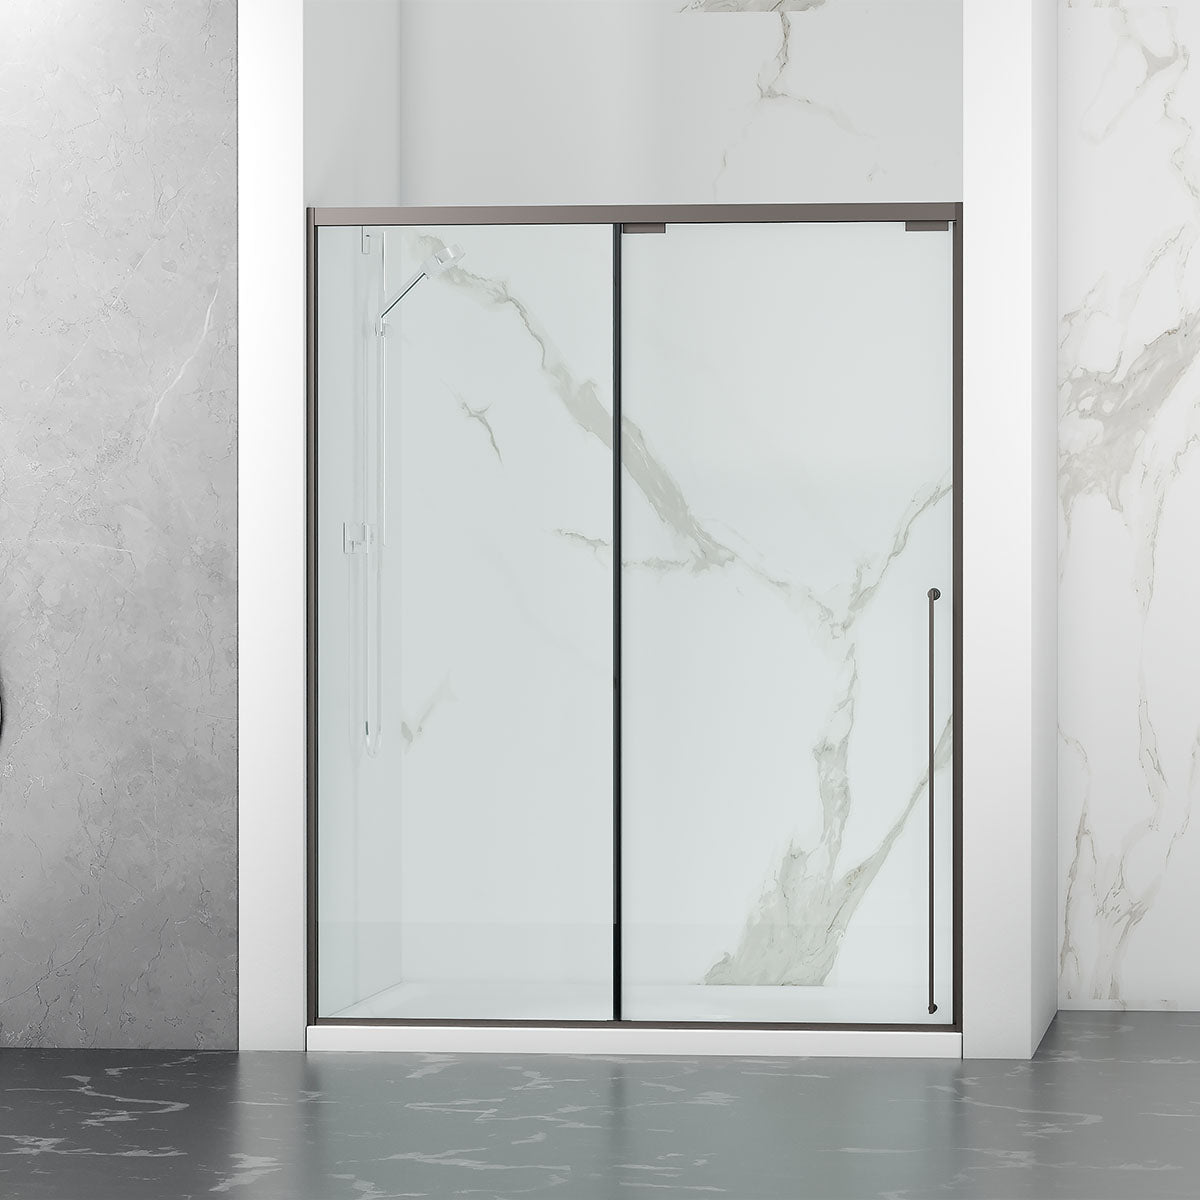 60" Karina Series Minimalist Shower Door with a Single Sliding Door